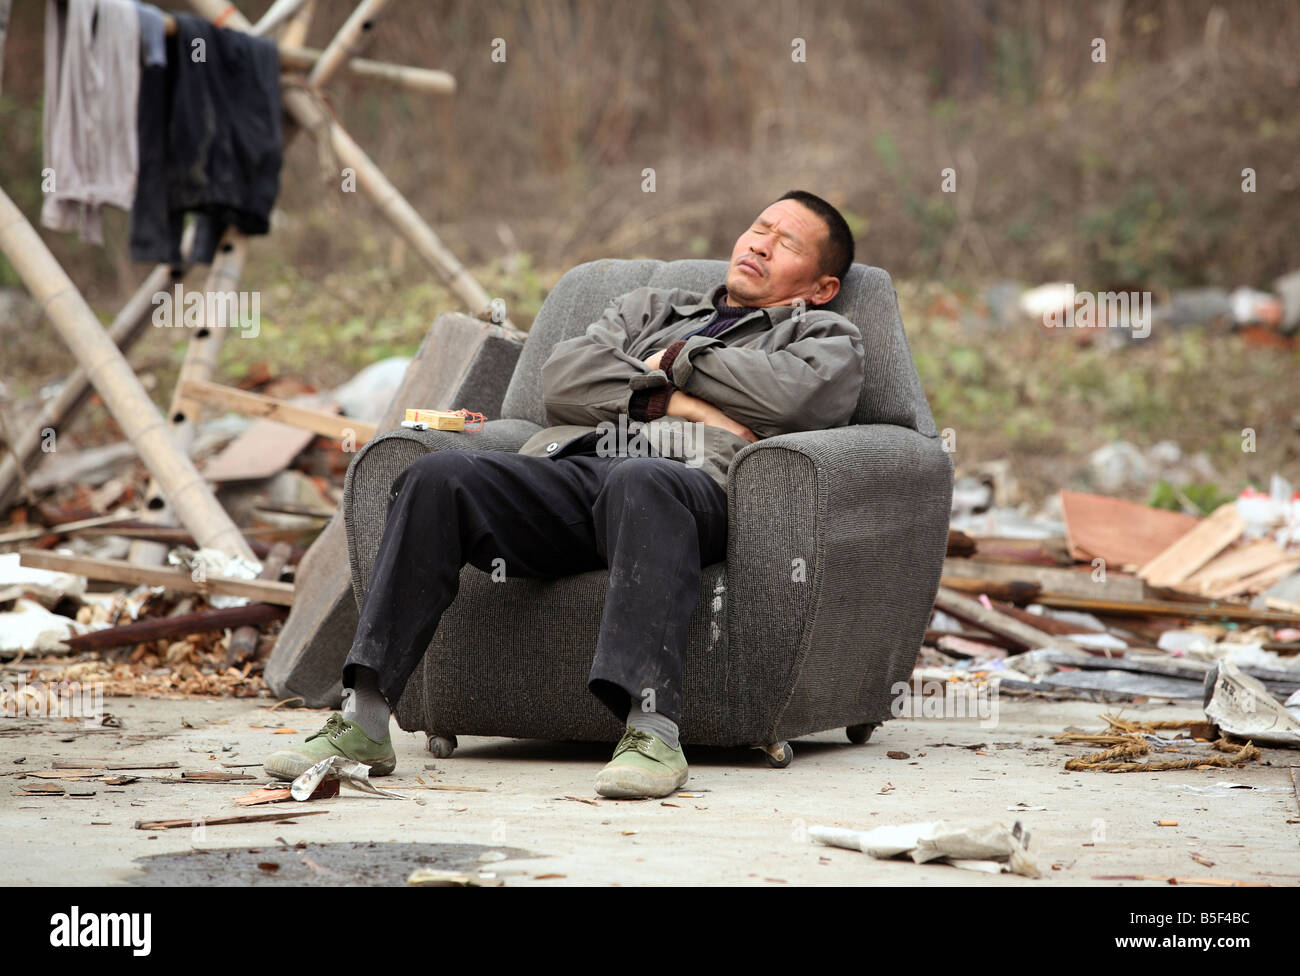 An Asian man sleeping in a chair, Suzhou, China Stock Photo